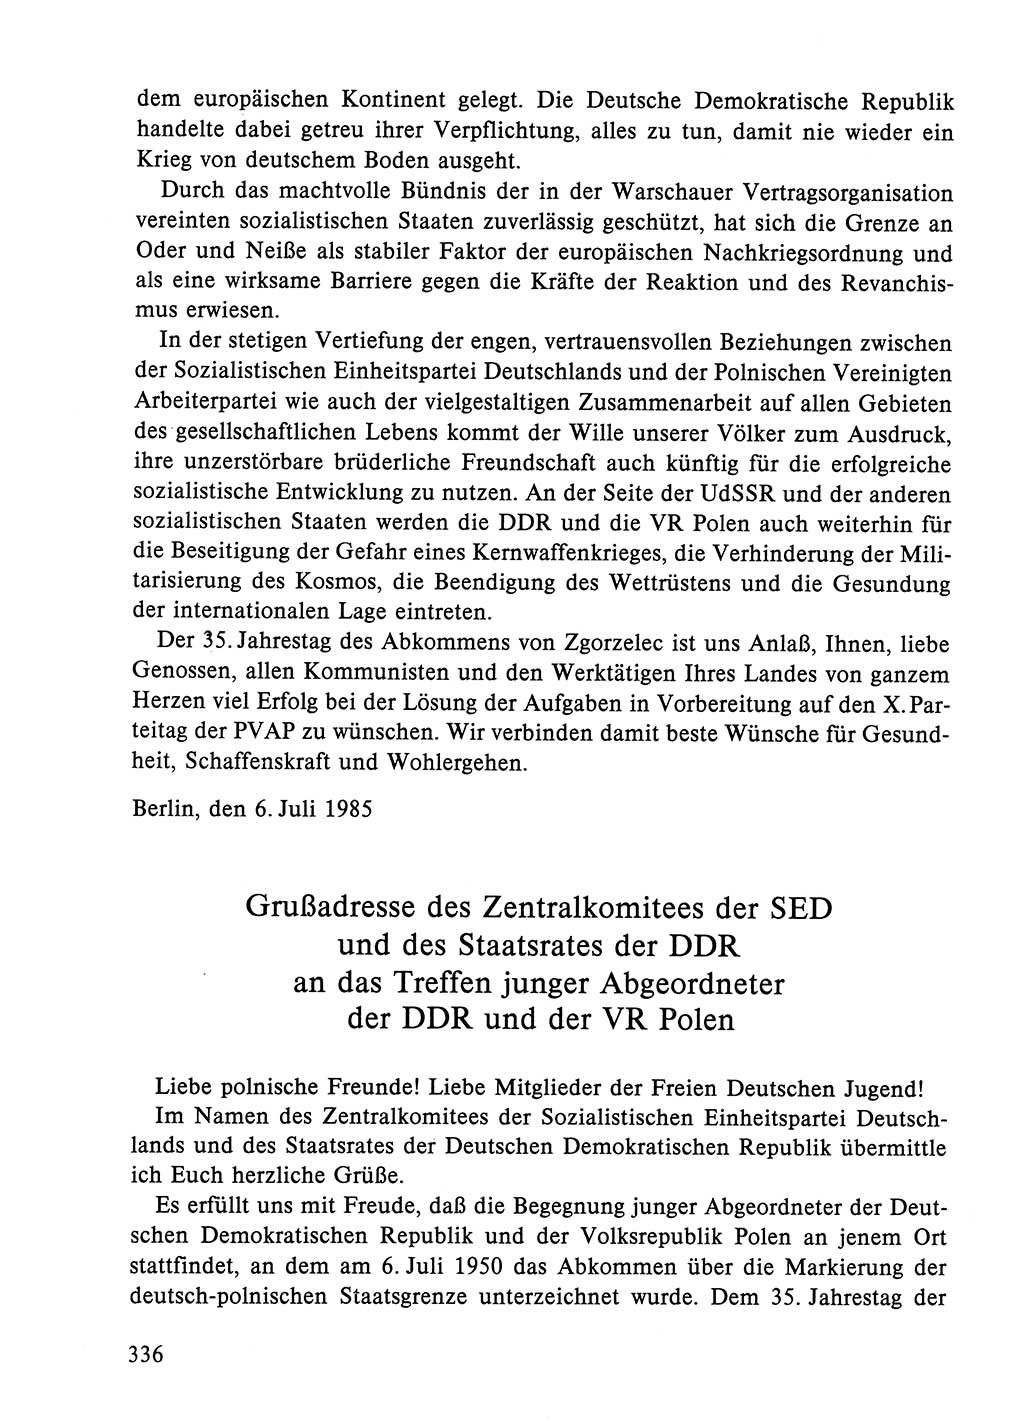 Dokumente der Sozialistischen Einheitspartei Deutschlands (SED) [Deutsche Demokratische Republik (DDR)] 1984-1985, Seite 336 (Dok. SED DDR 1984-1985, S. 336)